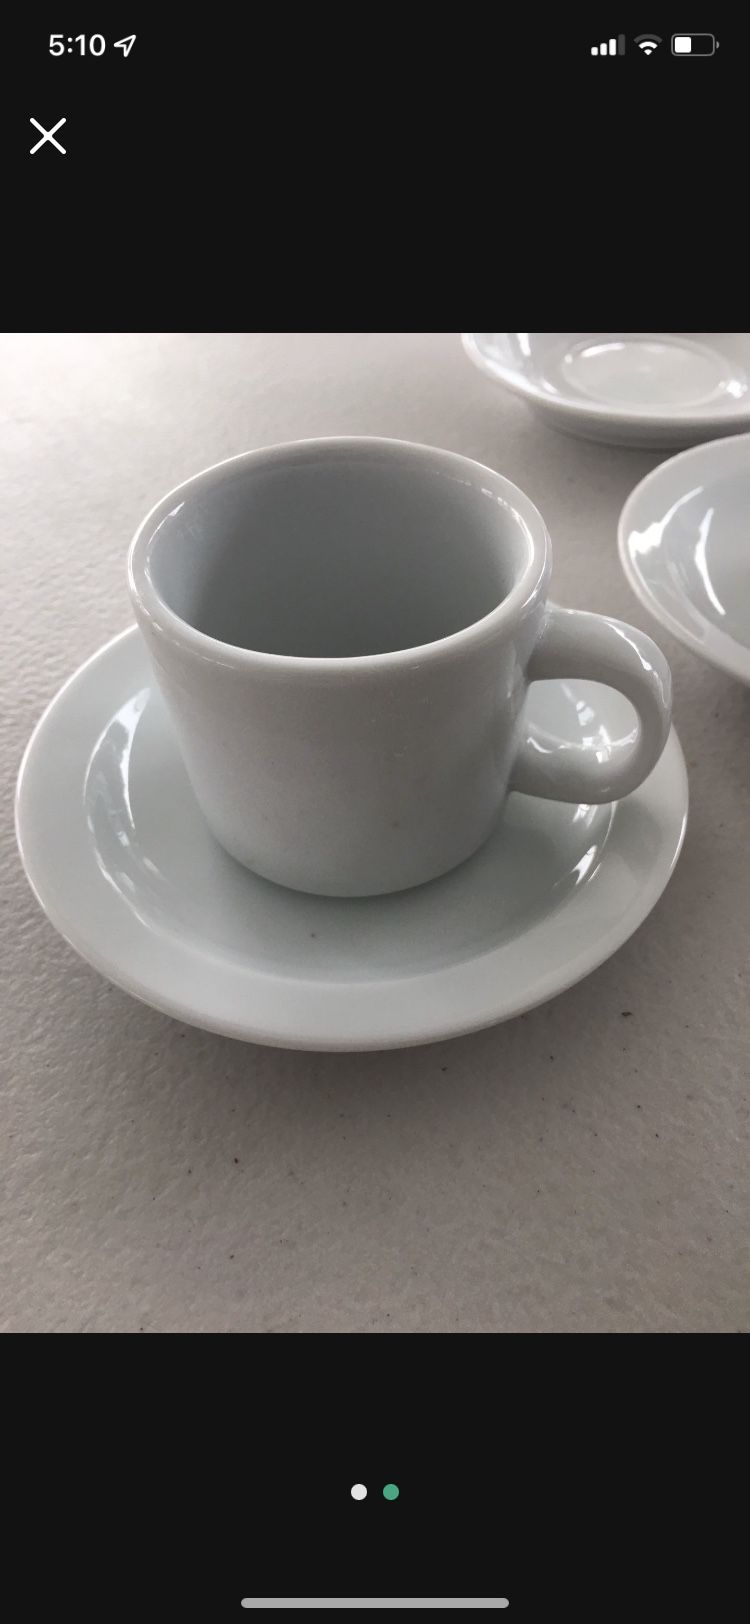 Miniture Teacup Set Fr Pier Imports